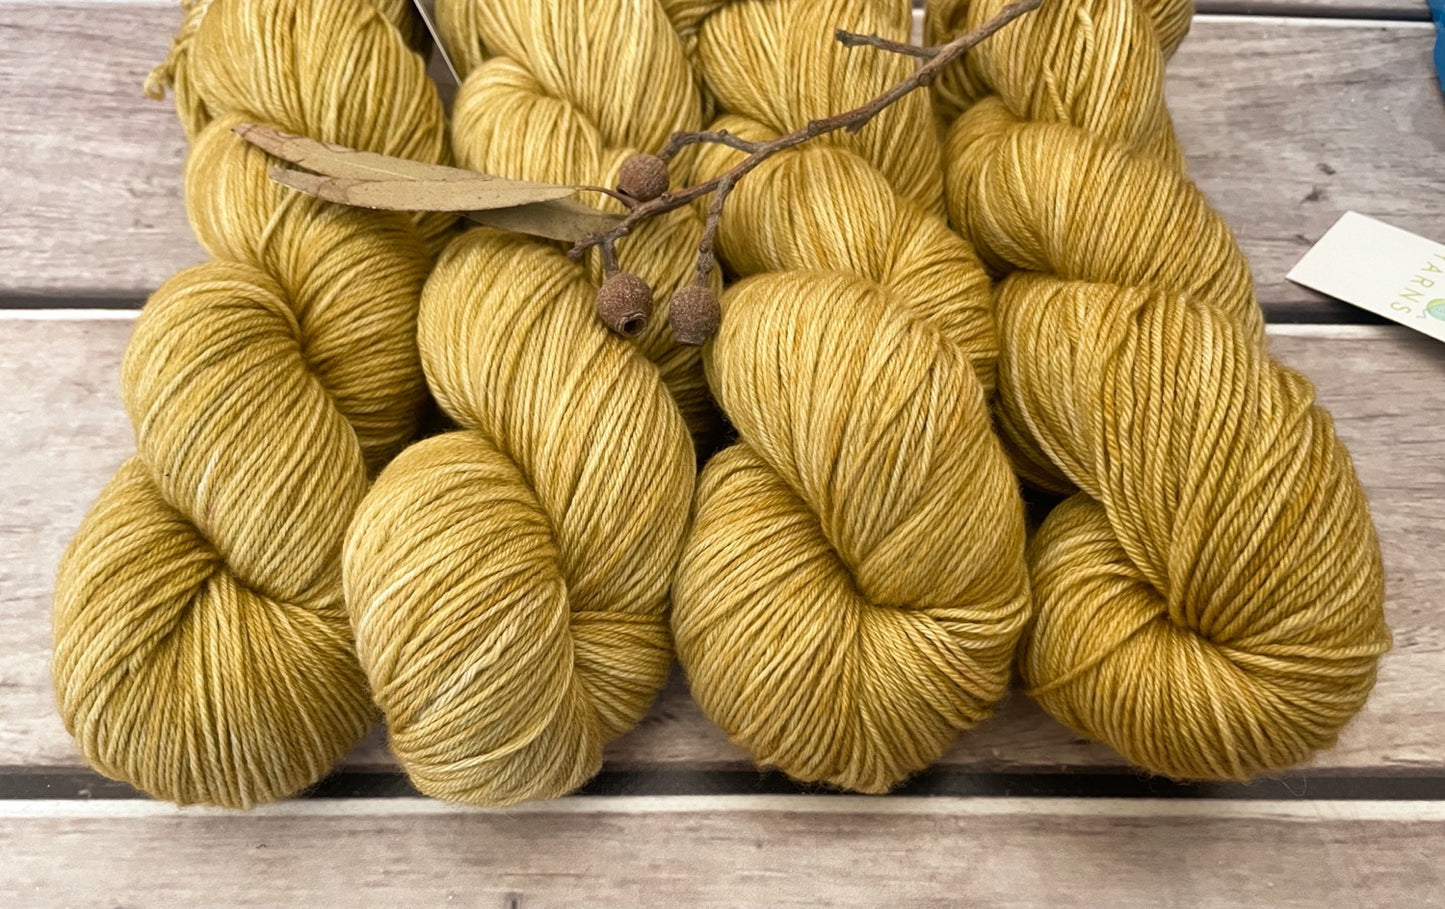 Uprising - 4ply sock yarn in merino and nylon - Darjeeling